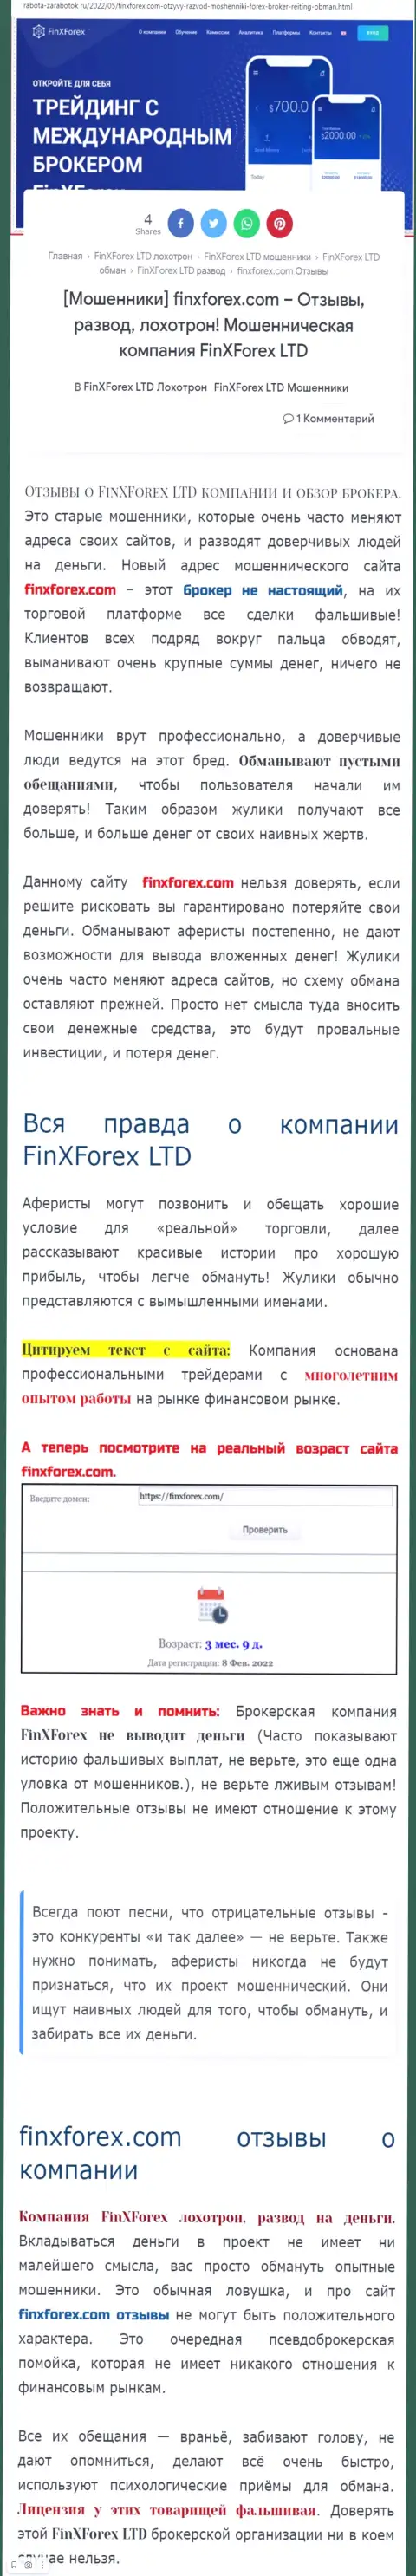 Создатель обзора о FinXForex утверждает, что в Fin X Forex разводят